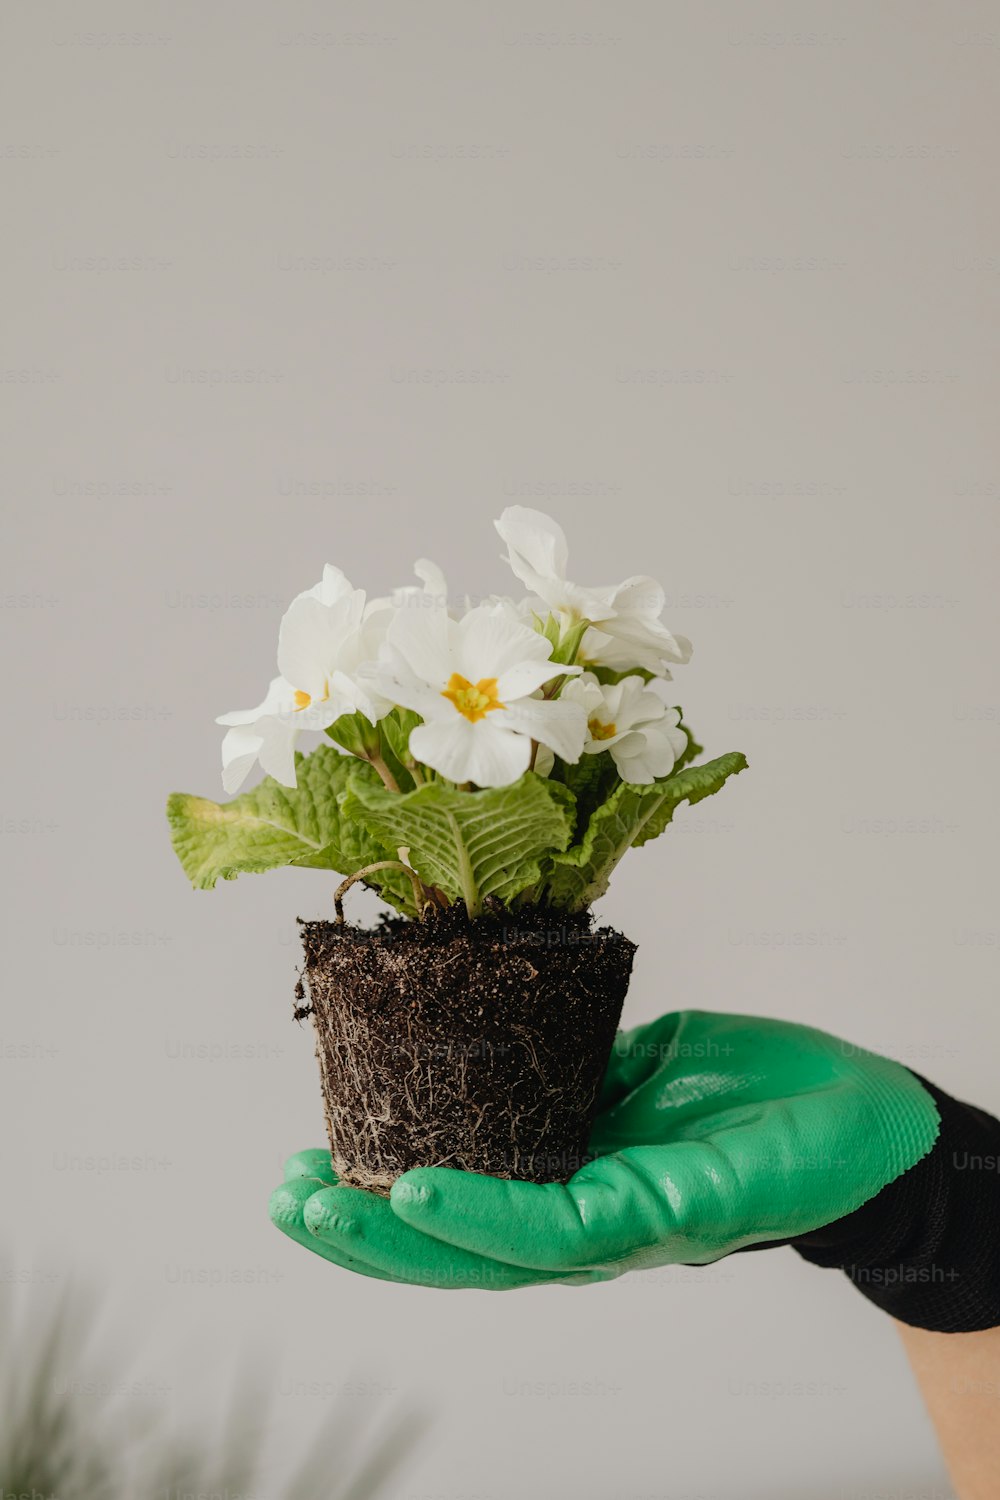 uma pessoa segurando um vaso de planta com flores brancas